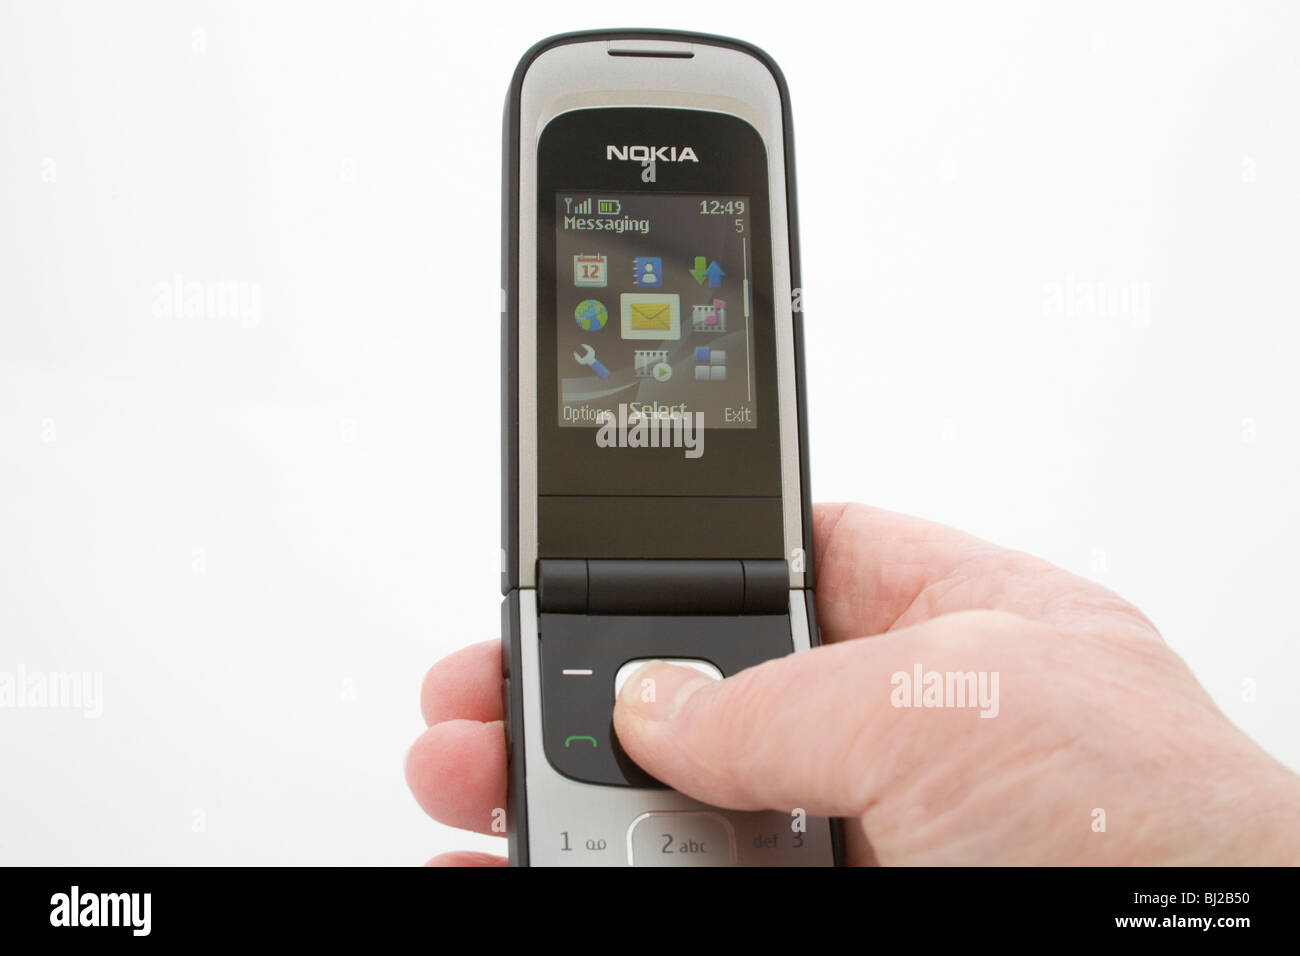 Estudio cerca de la mano de mujer elegir opción de mensaje de texto en un teléfono móvil Nokia negro Foto de stock